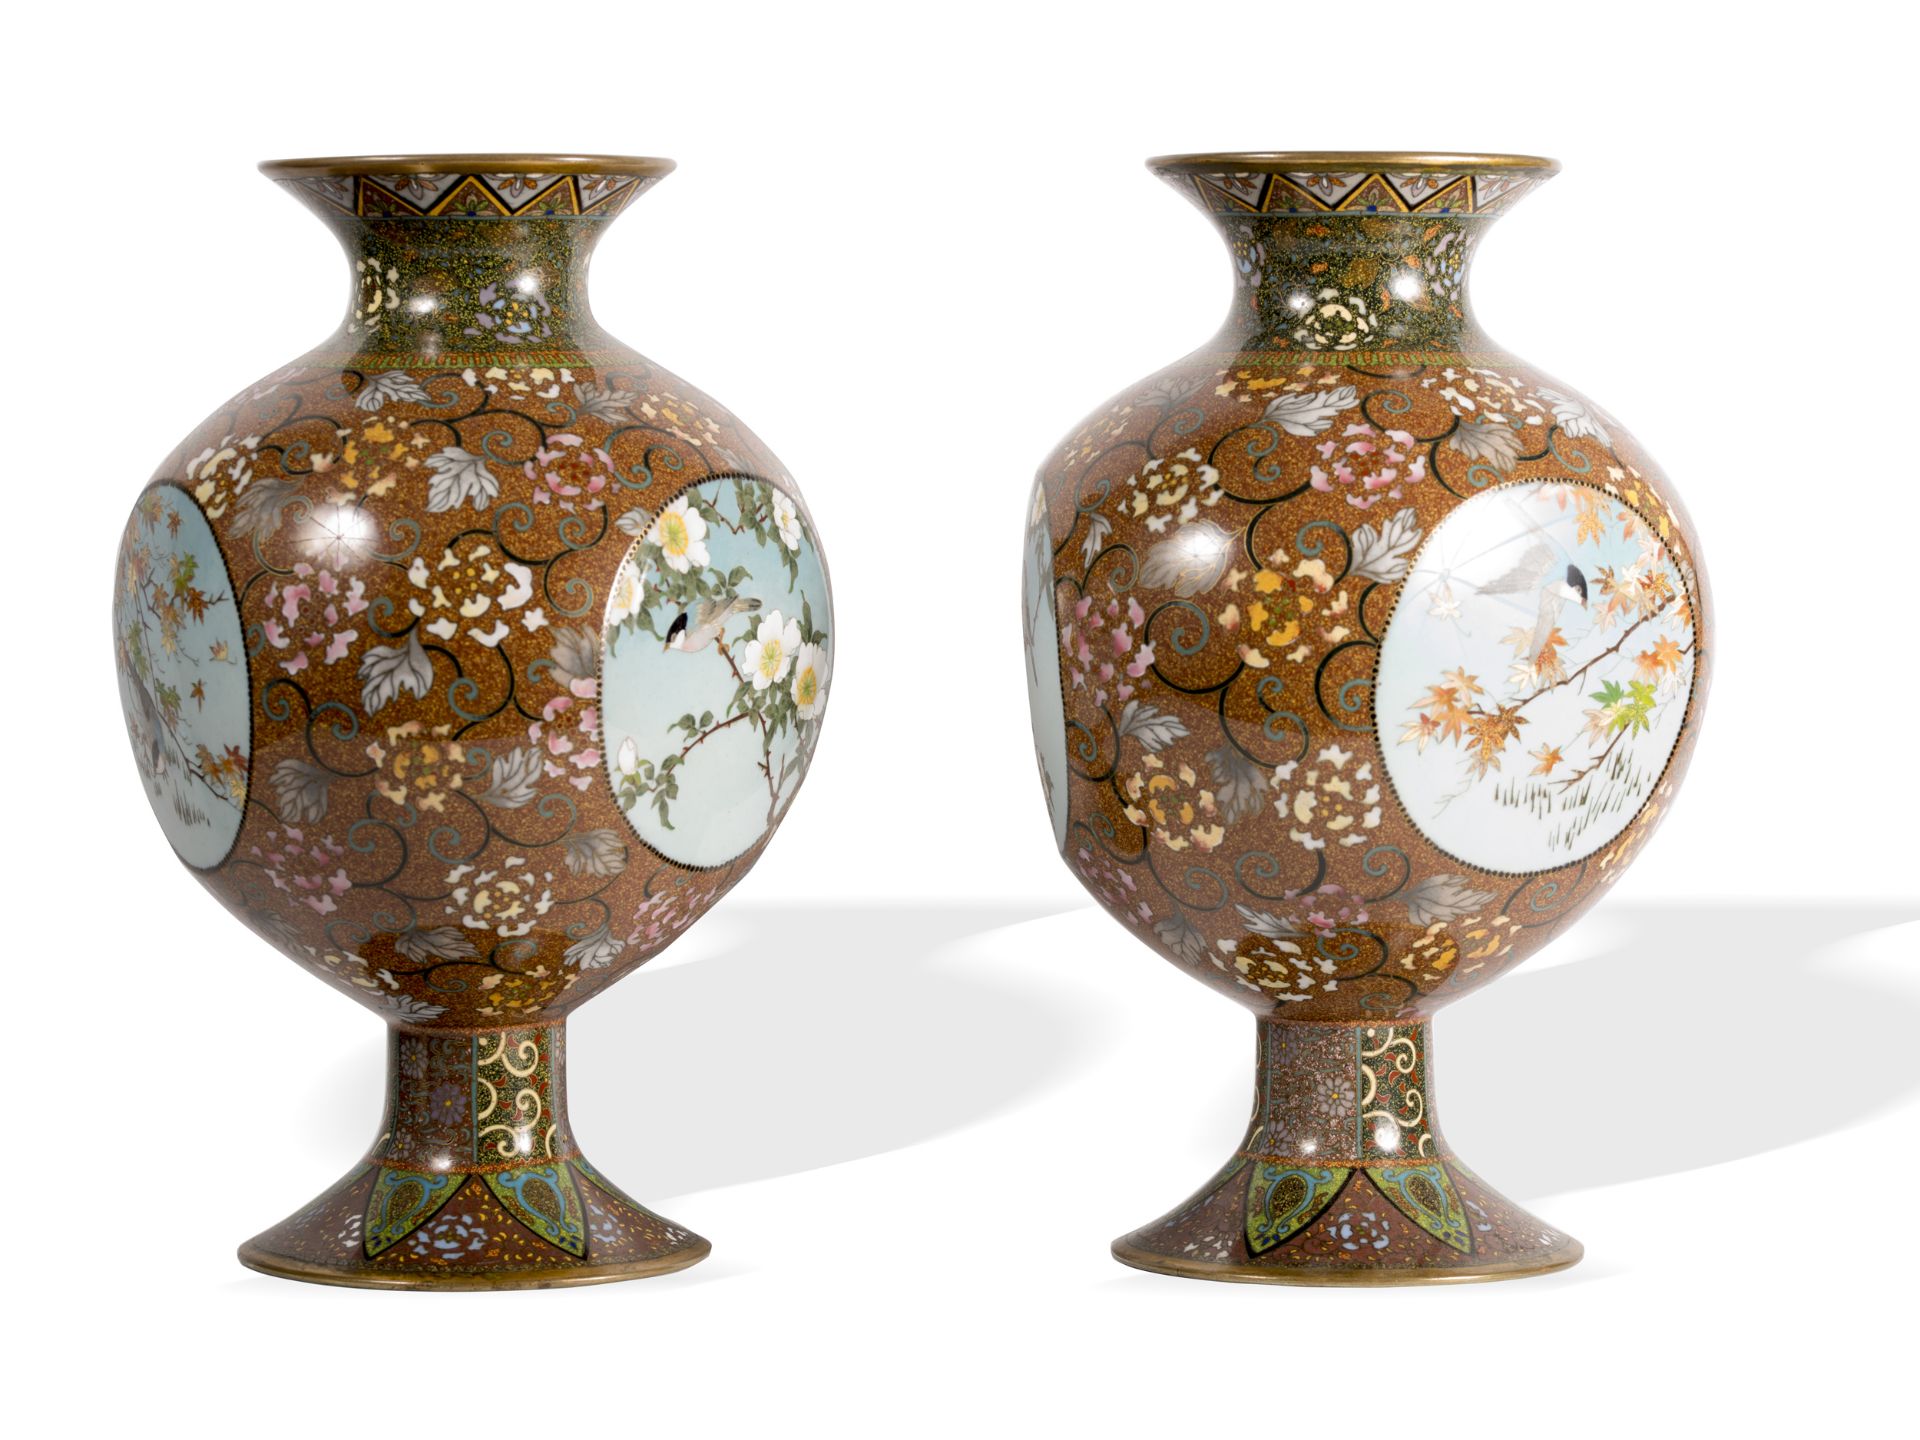 2 cloisonné vases, Asian - Image 4 of 5